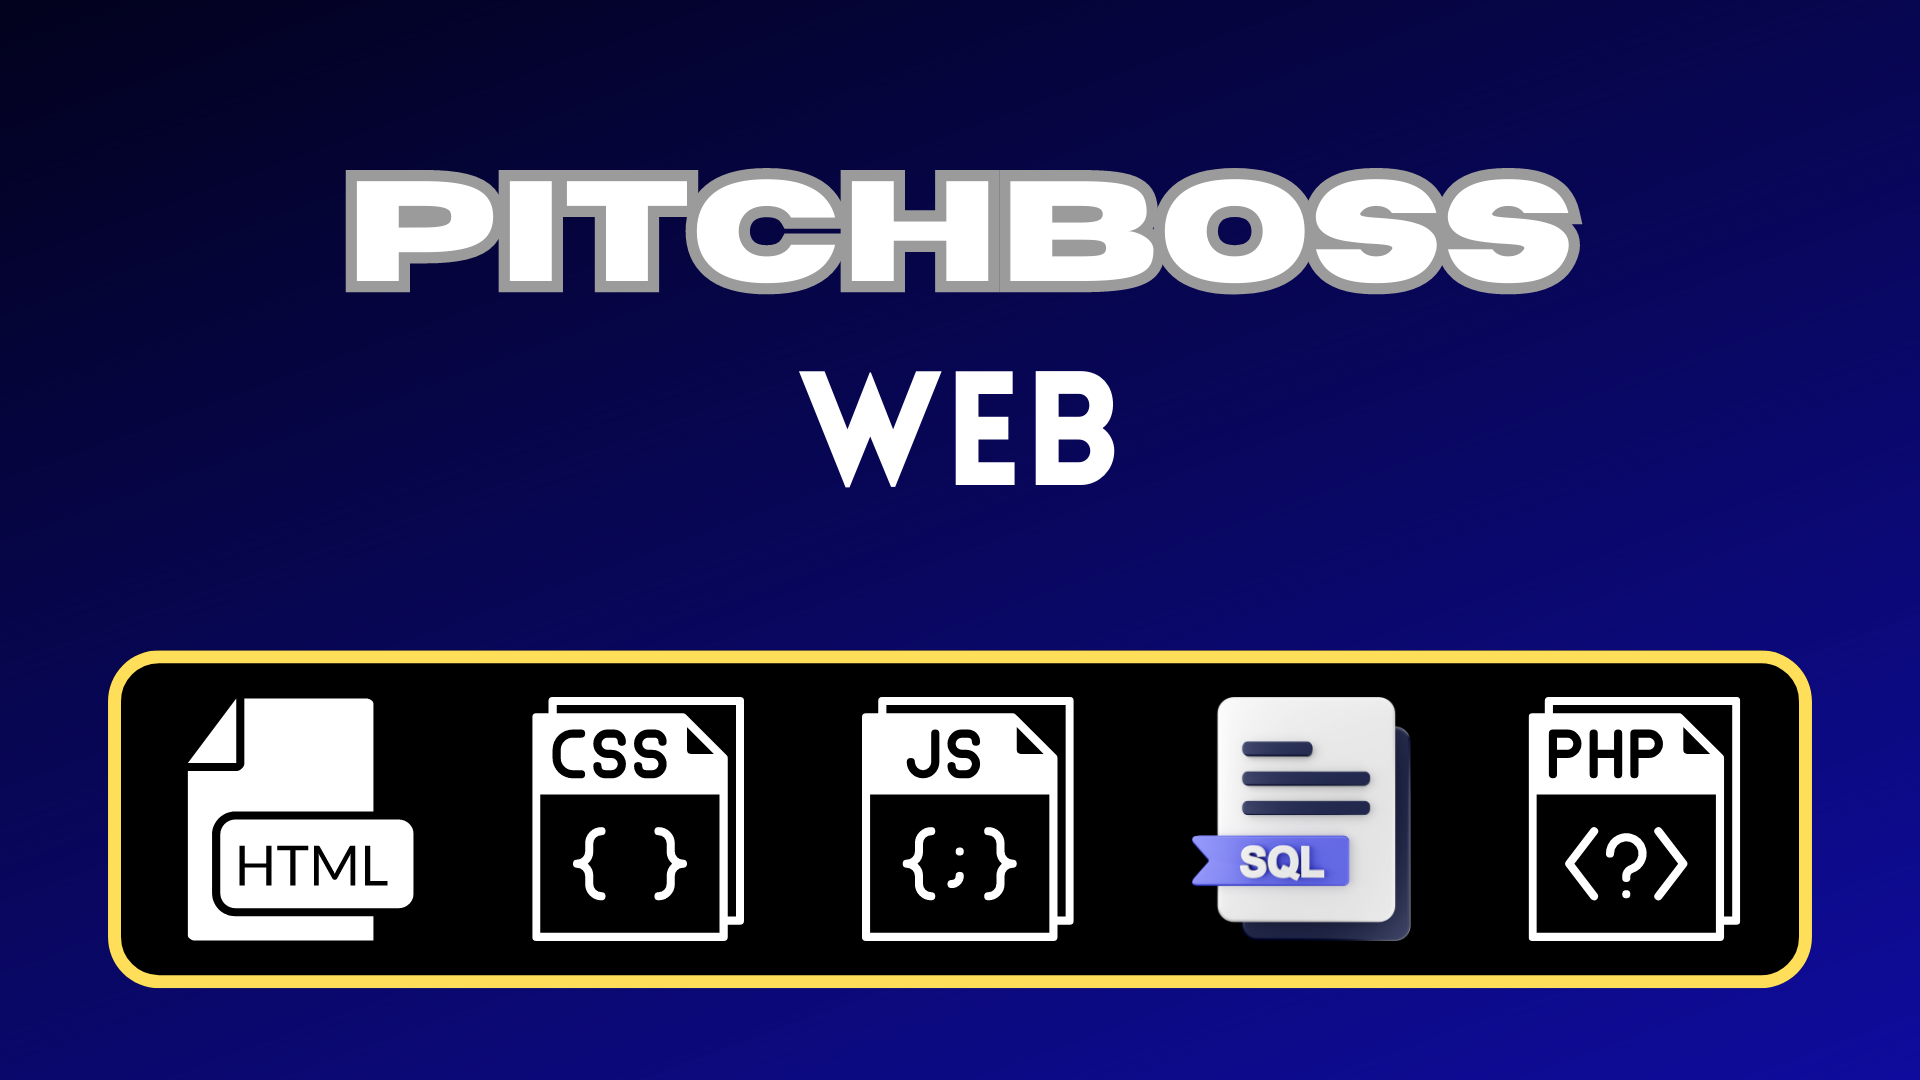 Pitchboss Web